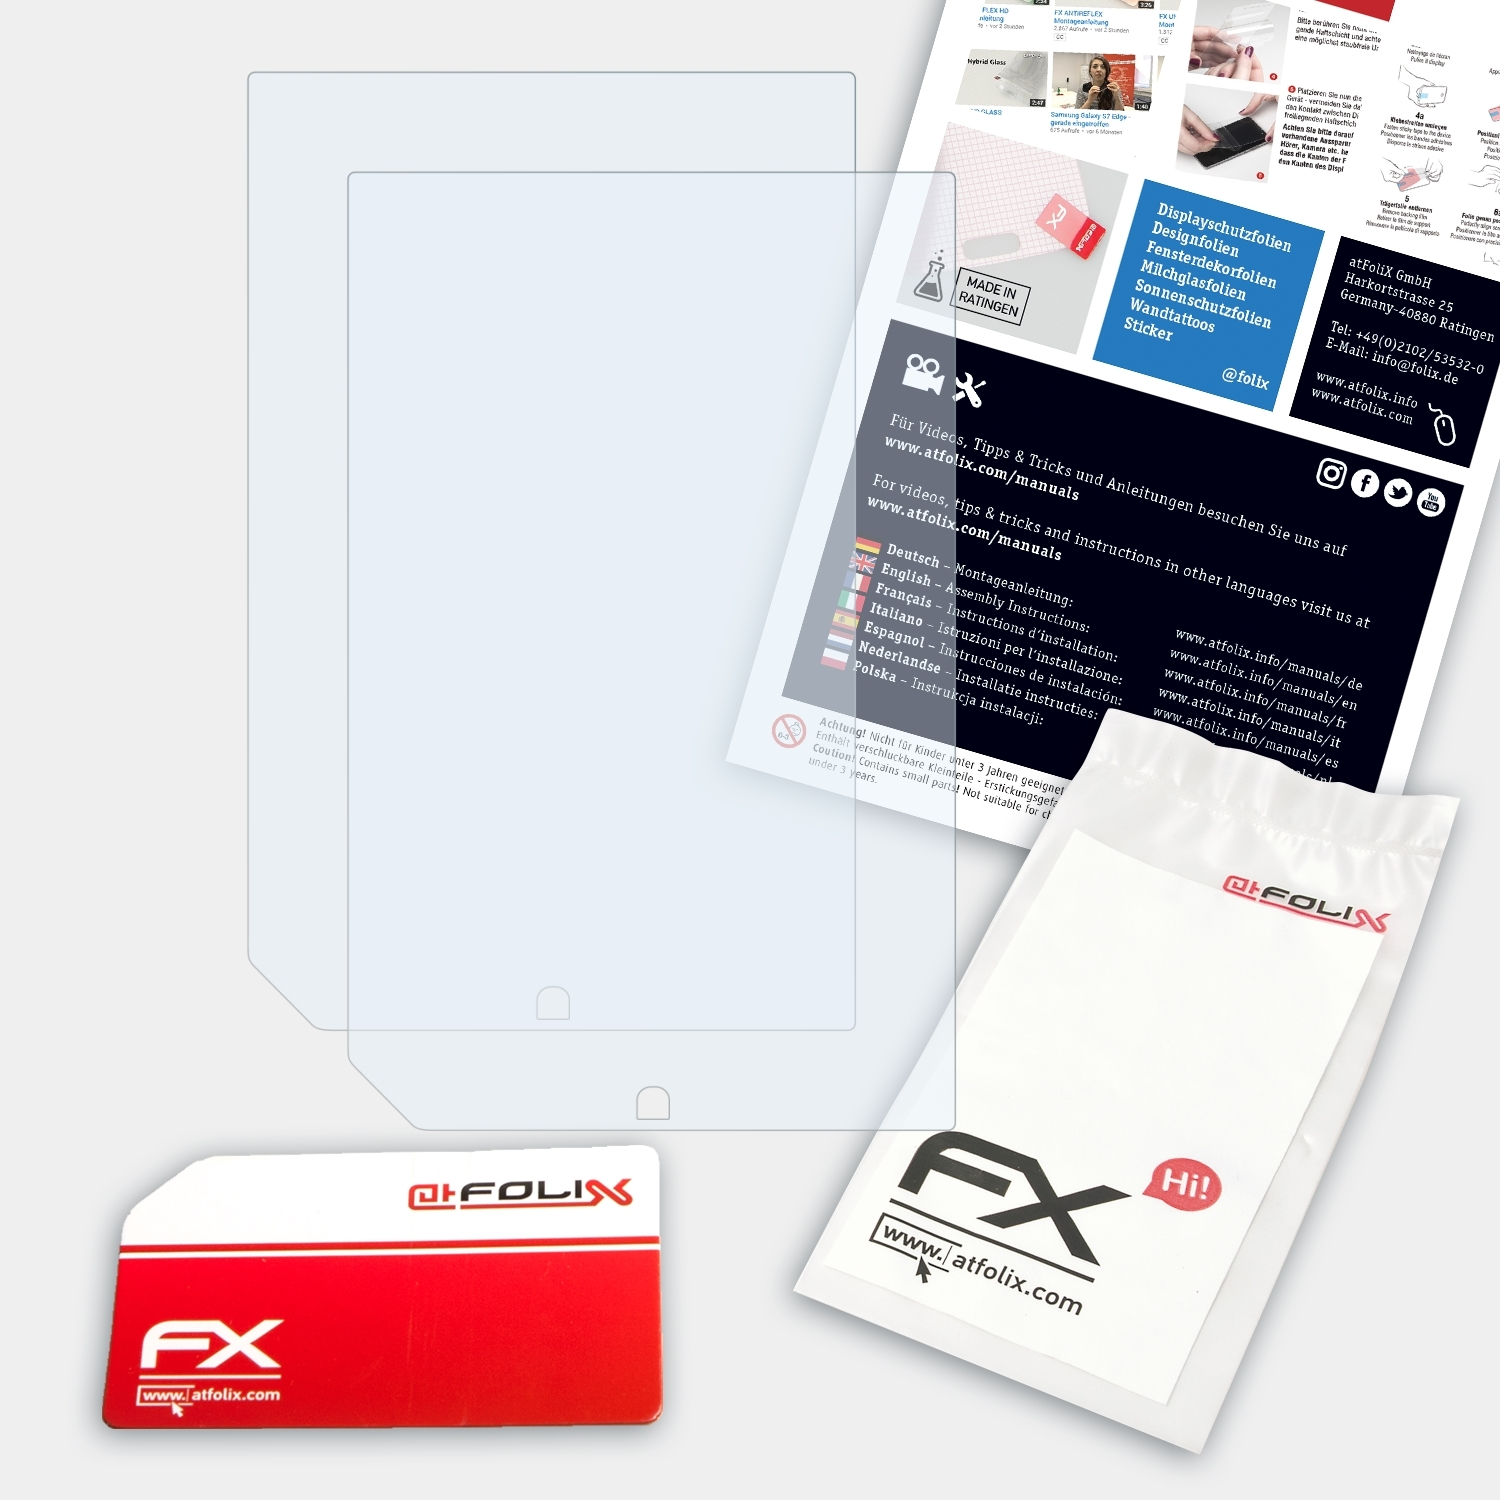 9 FX-Clear Inch) NOOK HD+ & ATFOLIX Barnes Noble Displayschutz(für 2x